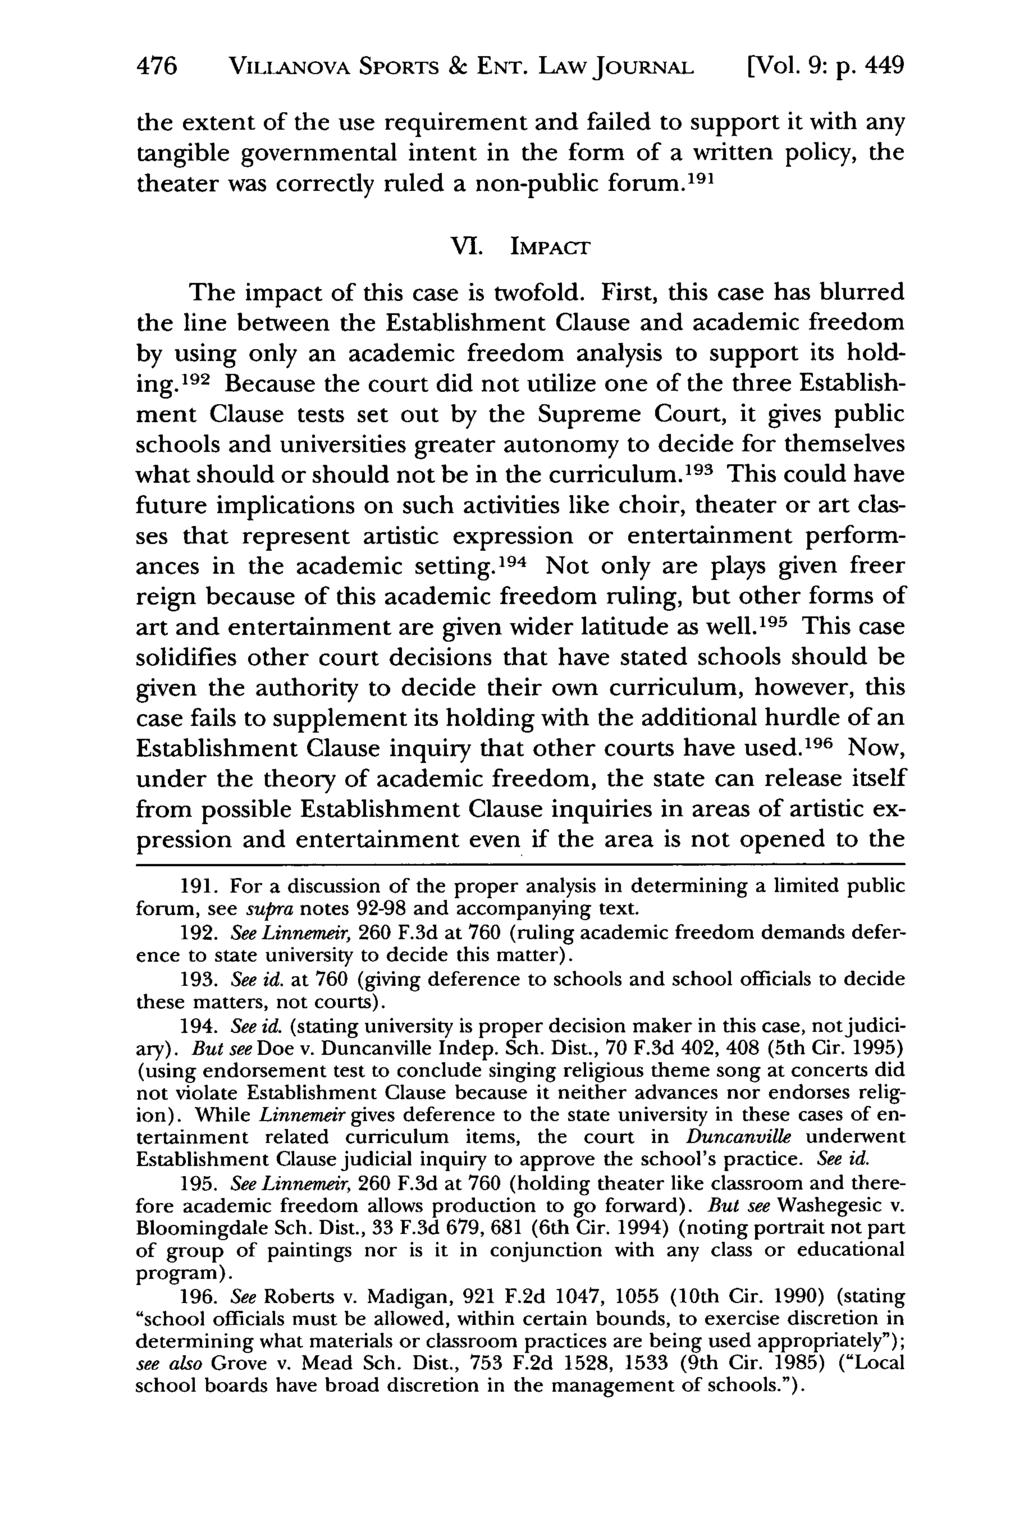 476 Jeffrey S. Moorad Sports Law VILLANOVA SPORTS & Journal, Vol. 9, Iss. 2 [2002], Art. 8 ENT. LAW JoURNAL [Vol. 9: p.